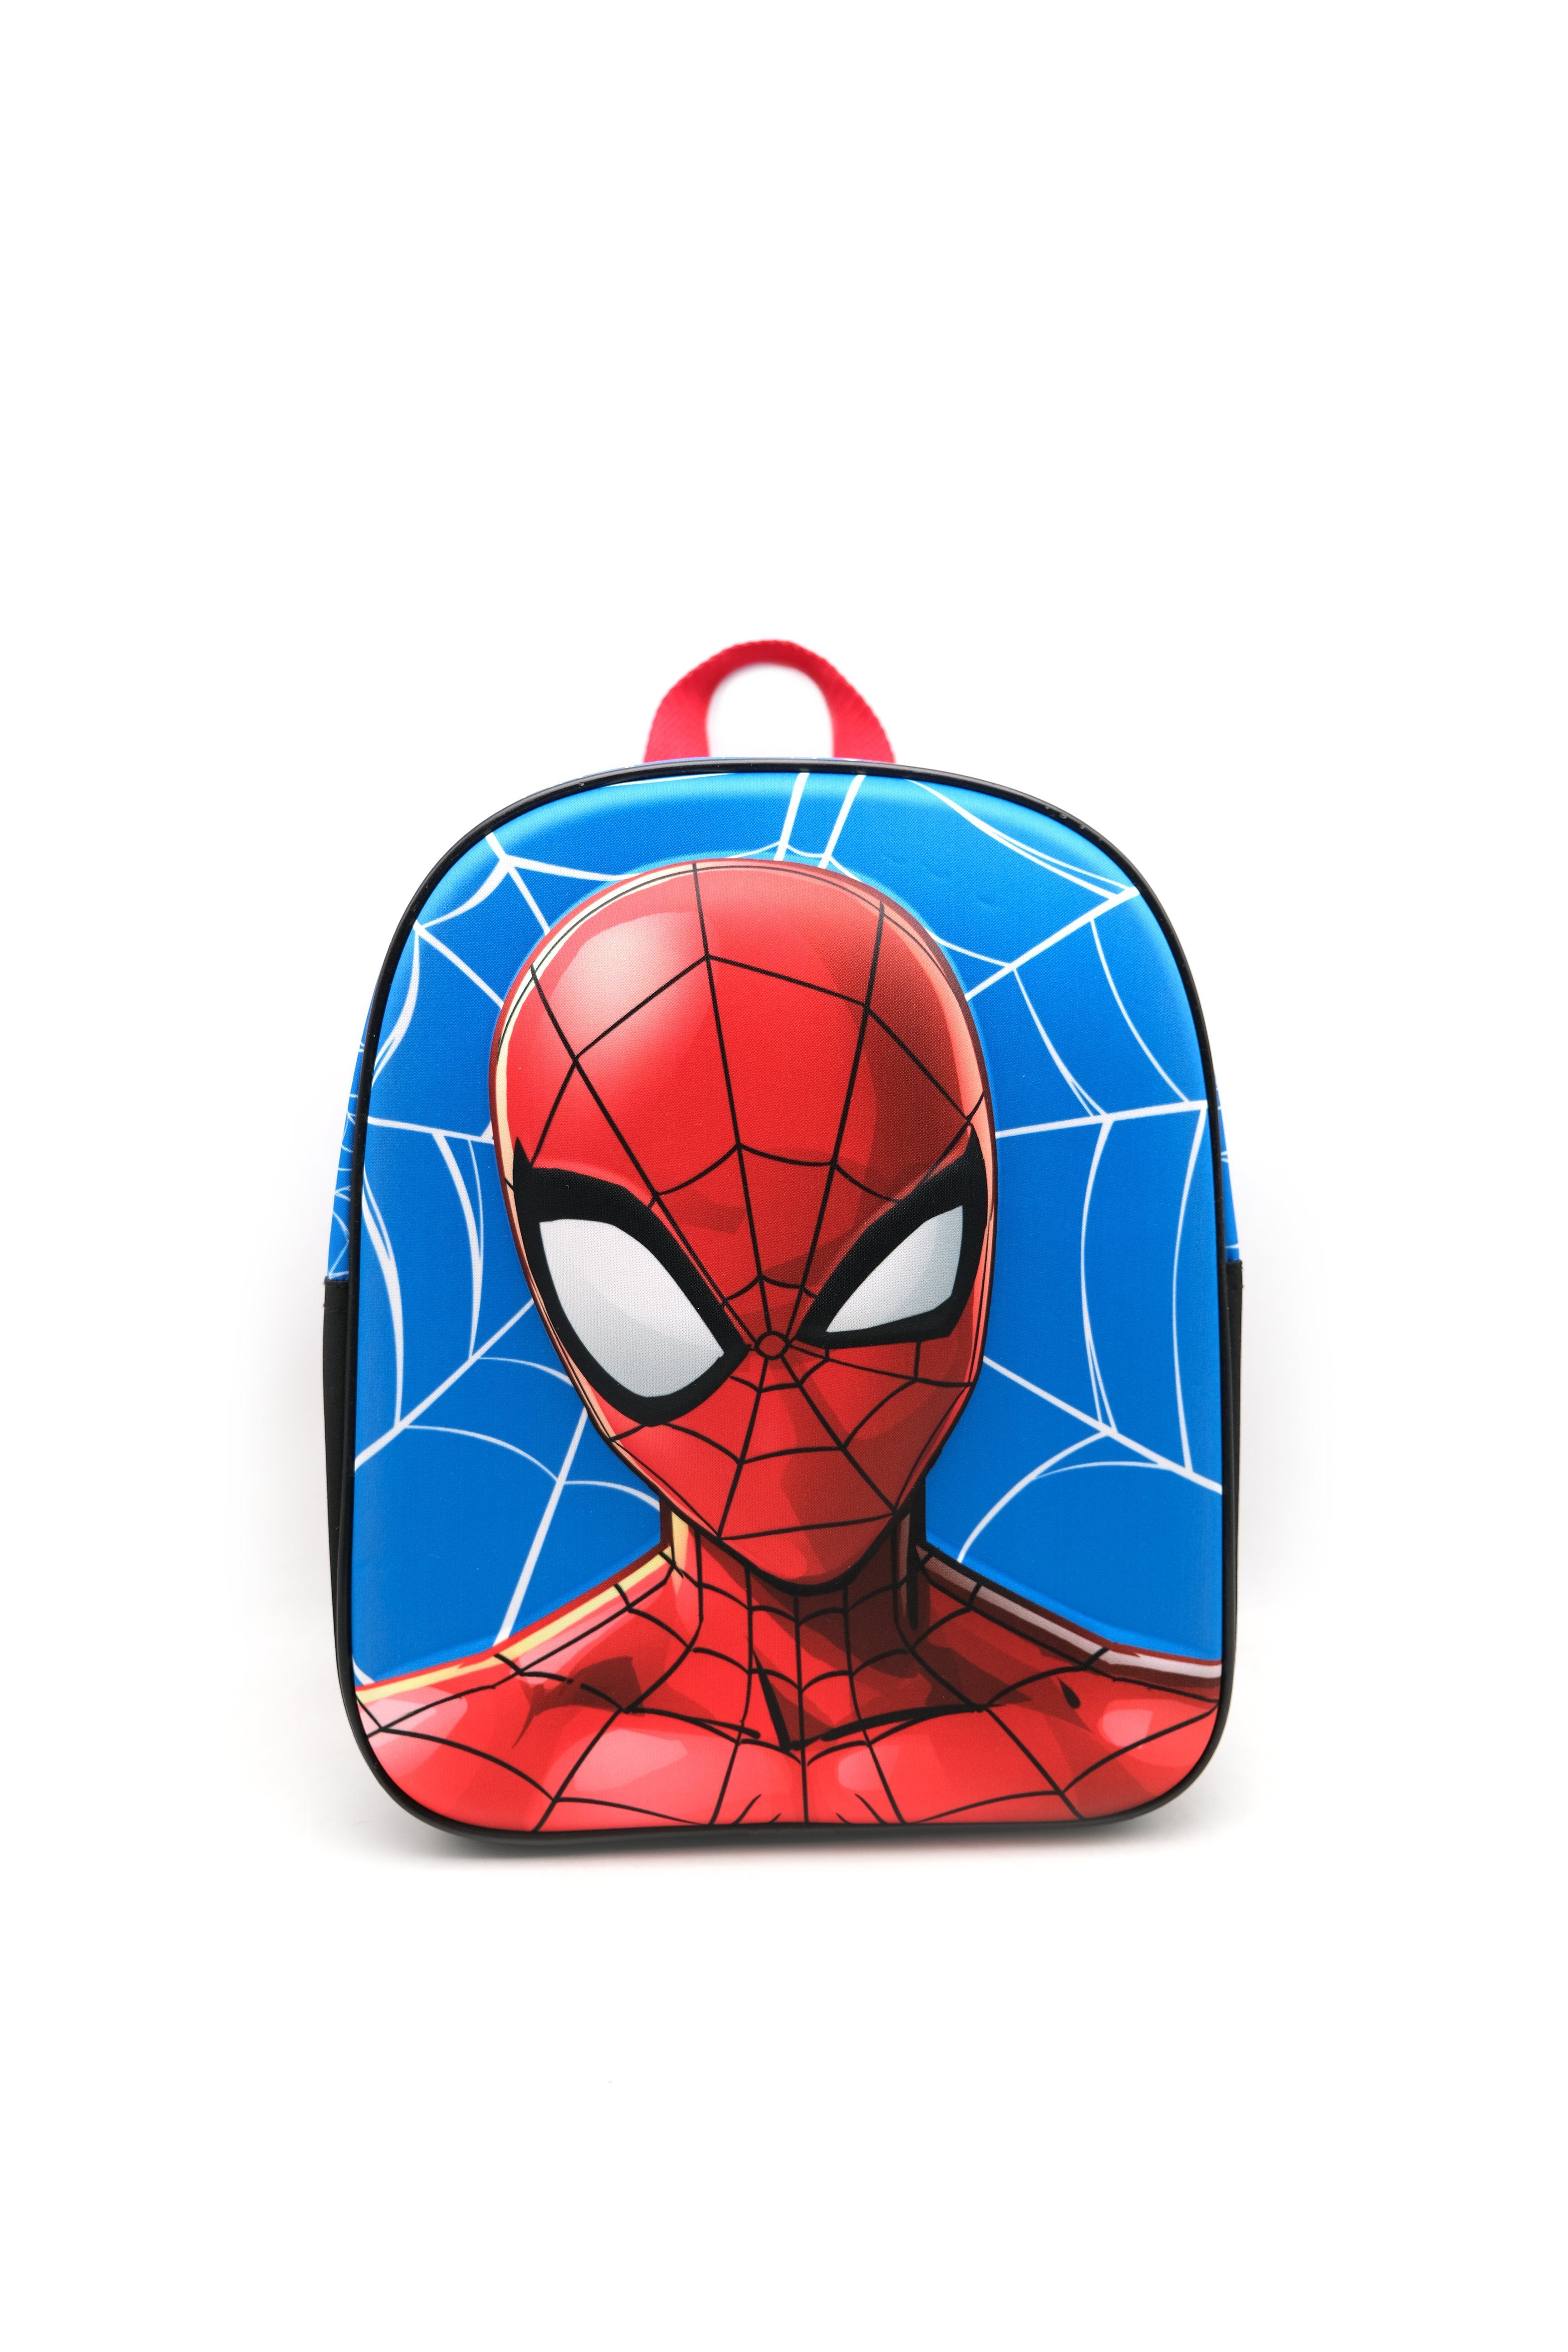 Spiderman Kinderrucksack Kleinkinderrucksack EVA "Spiderman" Tasche Schultasche 30cm